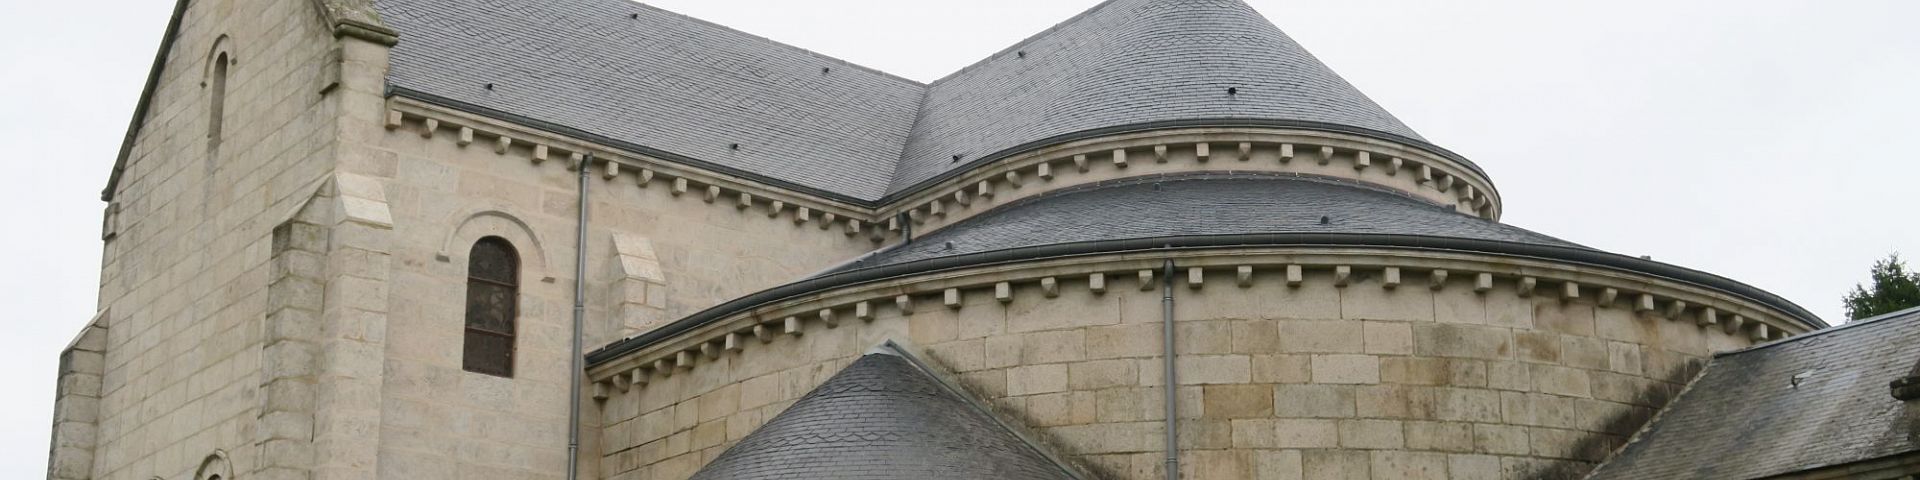 Dun-les-Places - Eglise Sainte Amélie (58)